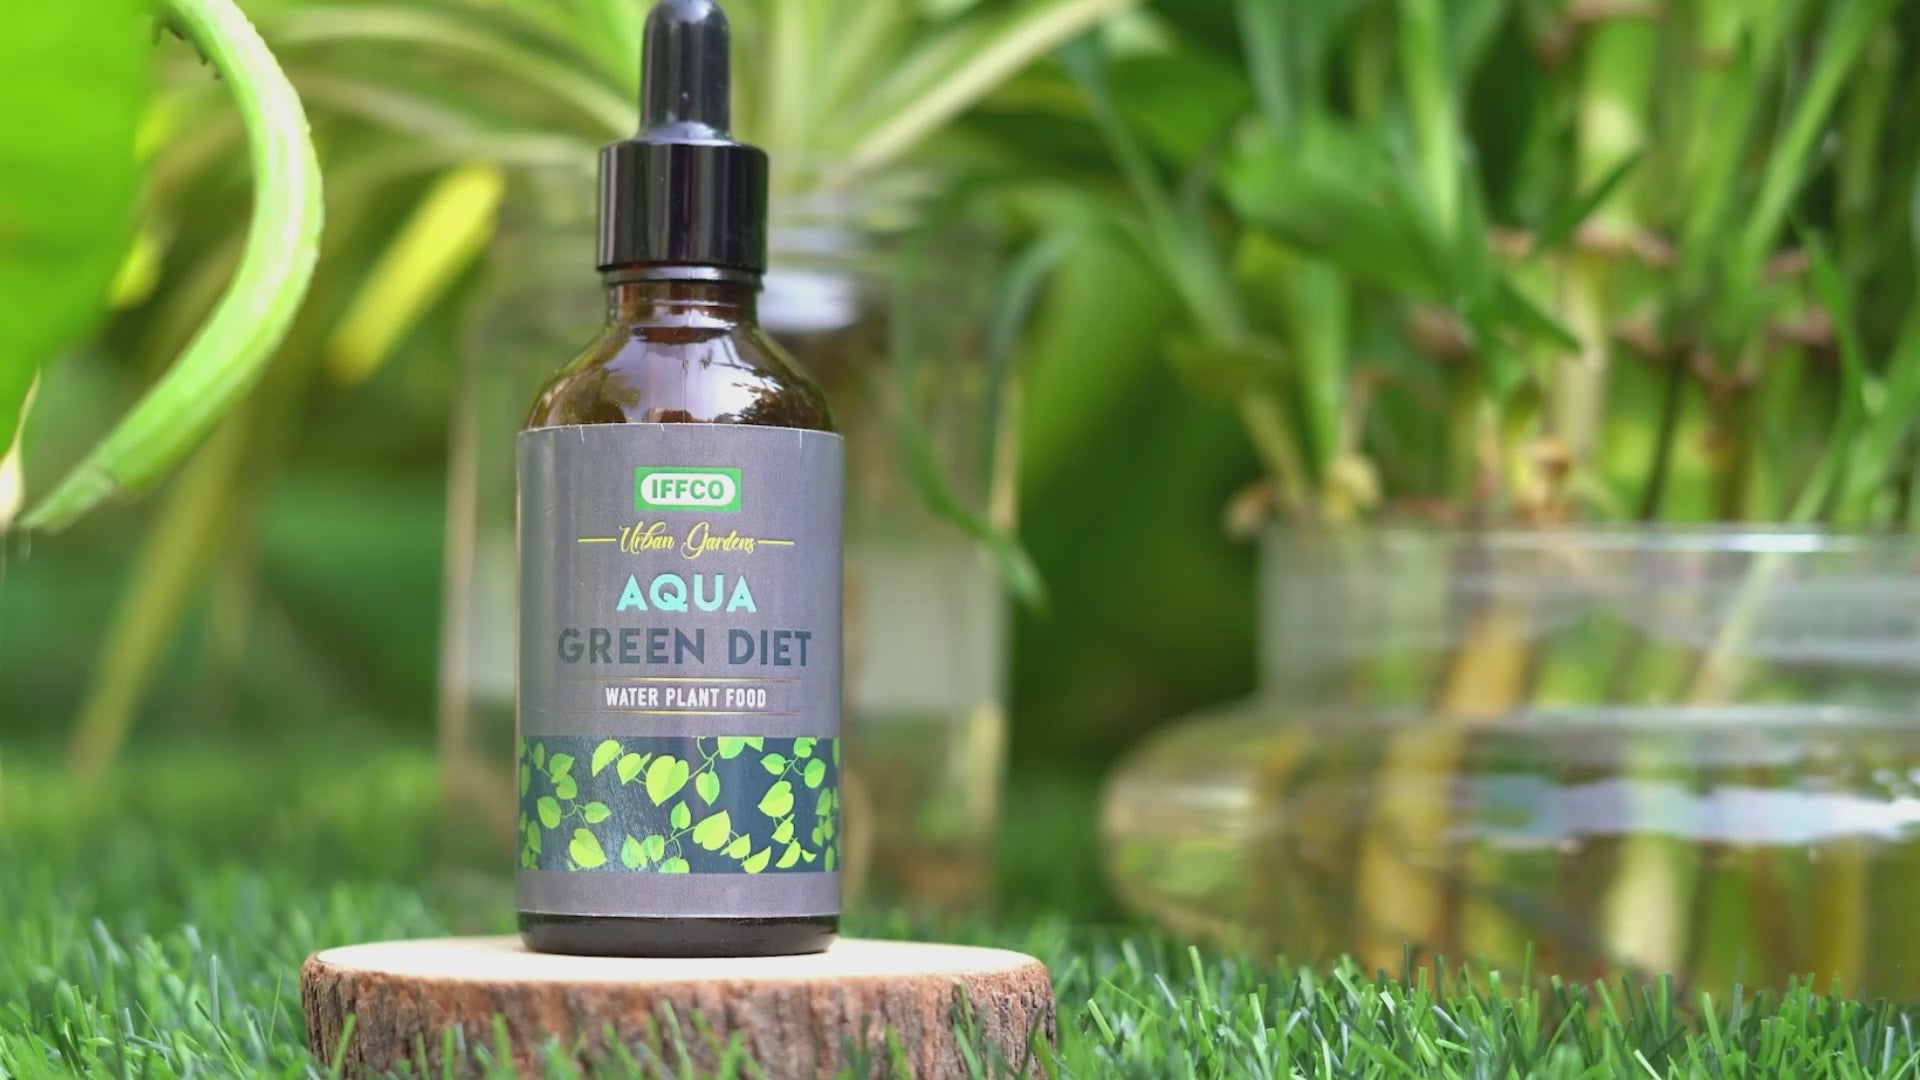 Aqua Green Diet - Water Plant Food